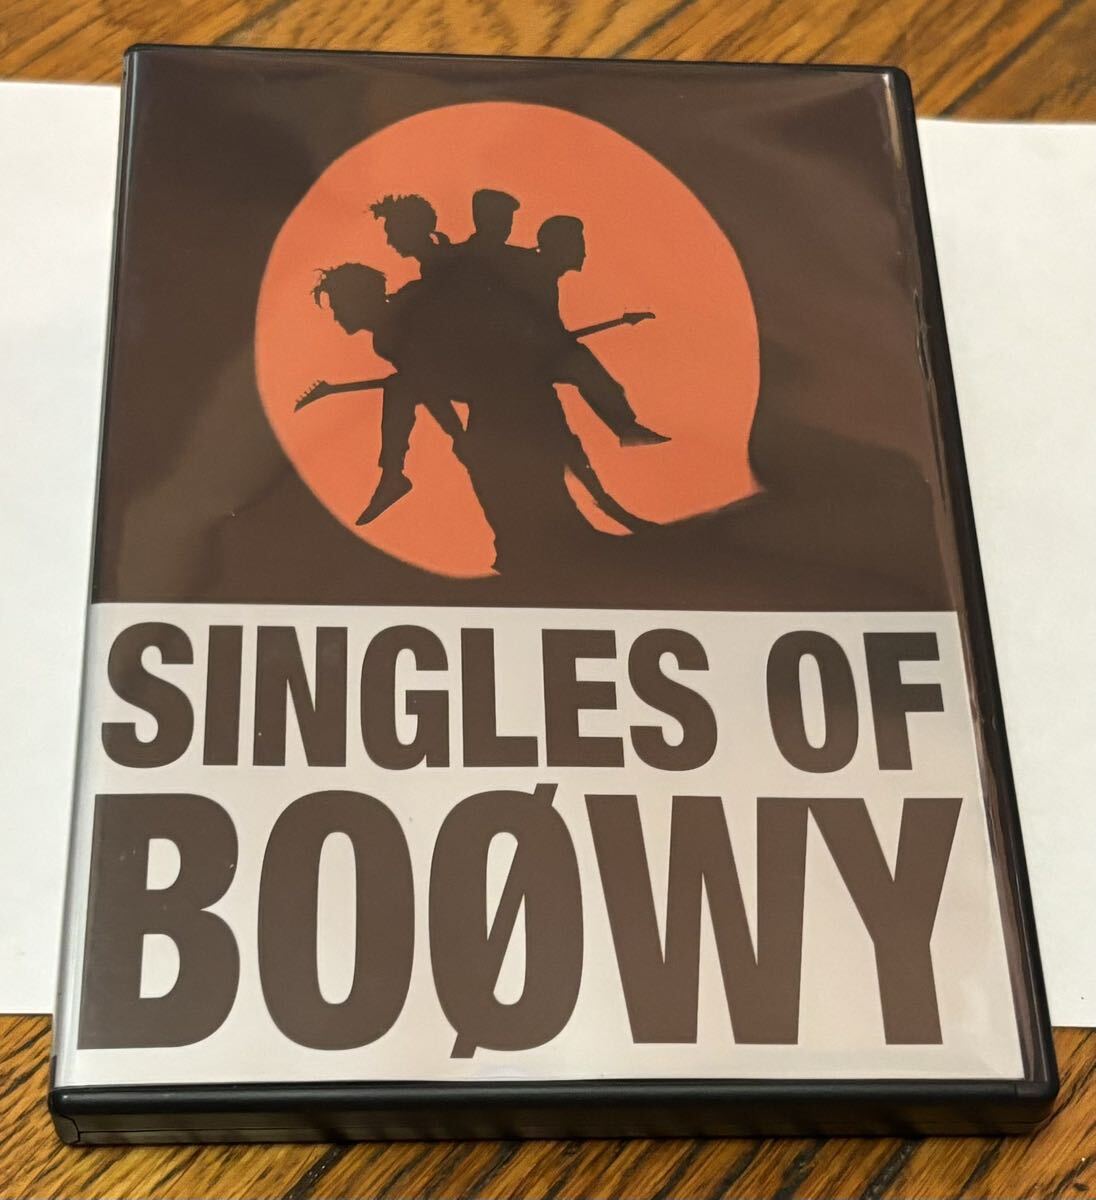  музыка Японская музыка J-ROCK J-POP BOOWY bow iSINGLES OF BOOWY DVD версия б/у.